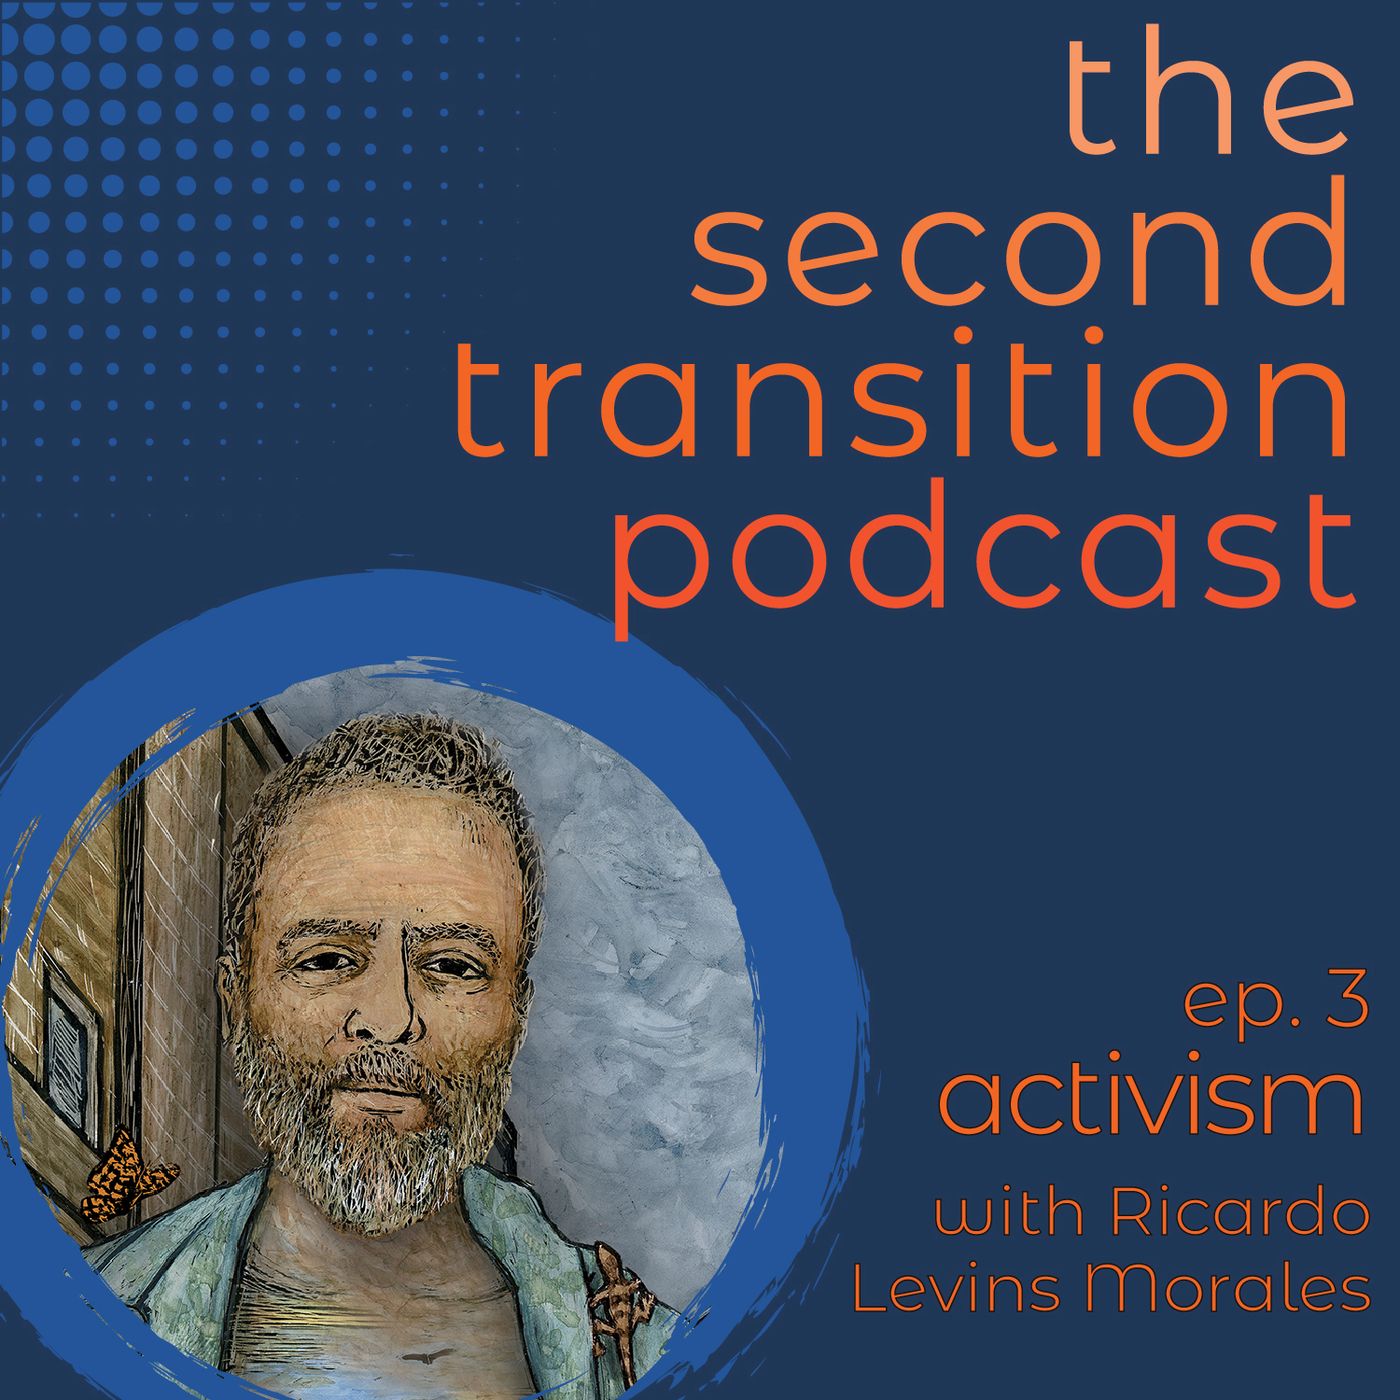 Episode 3 - Activism